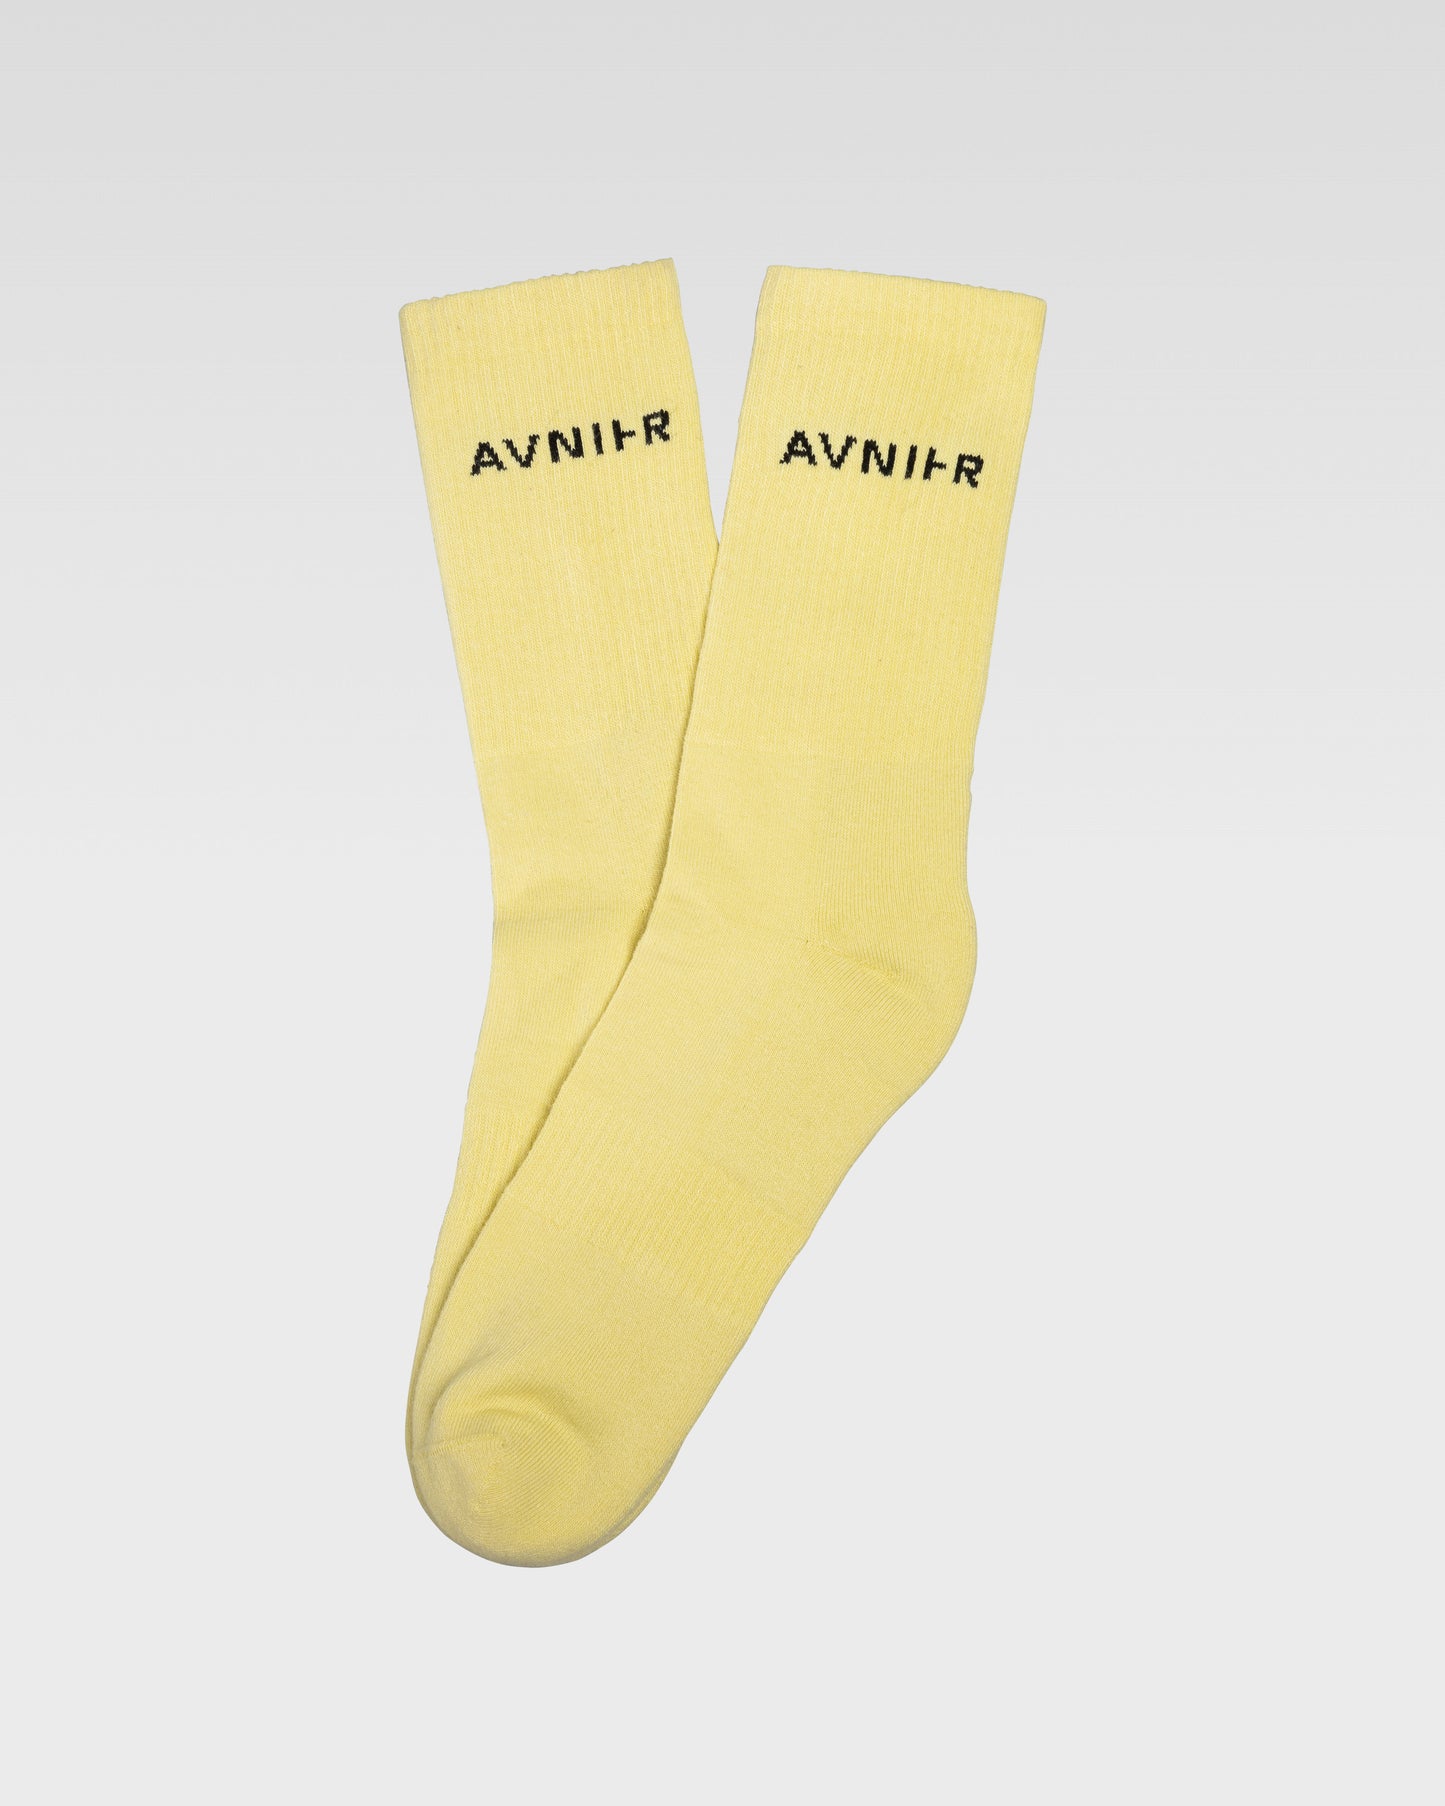 socks-loop-horizontal-jaune-pale-avnier-avnir-3-packshot-dos - jaune pâle